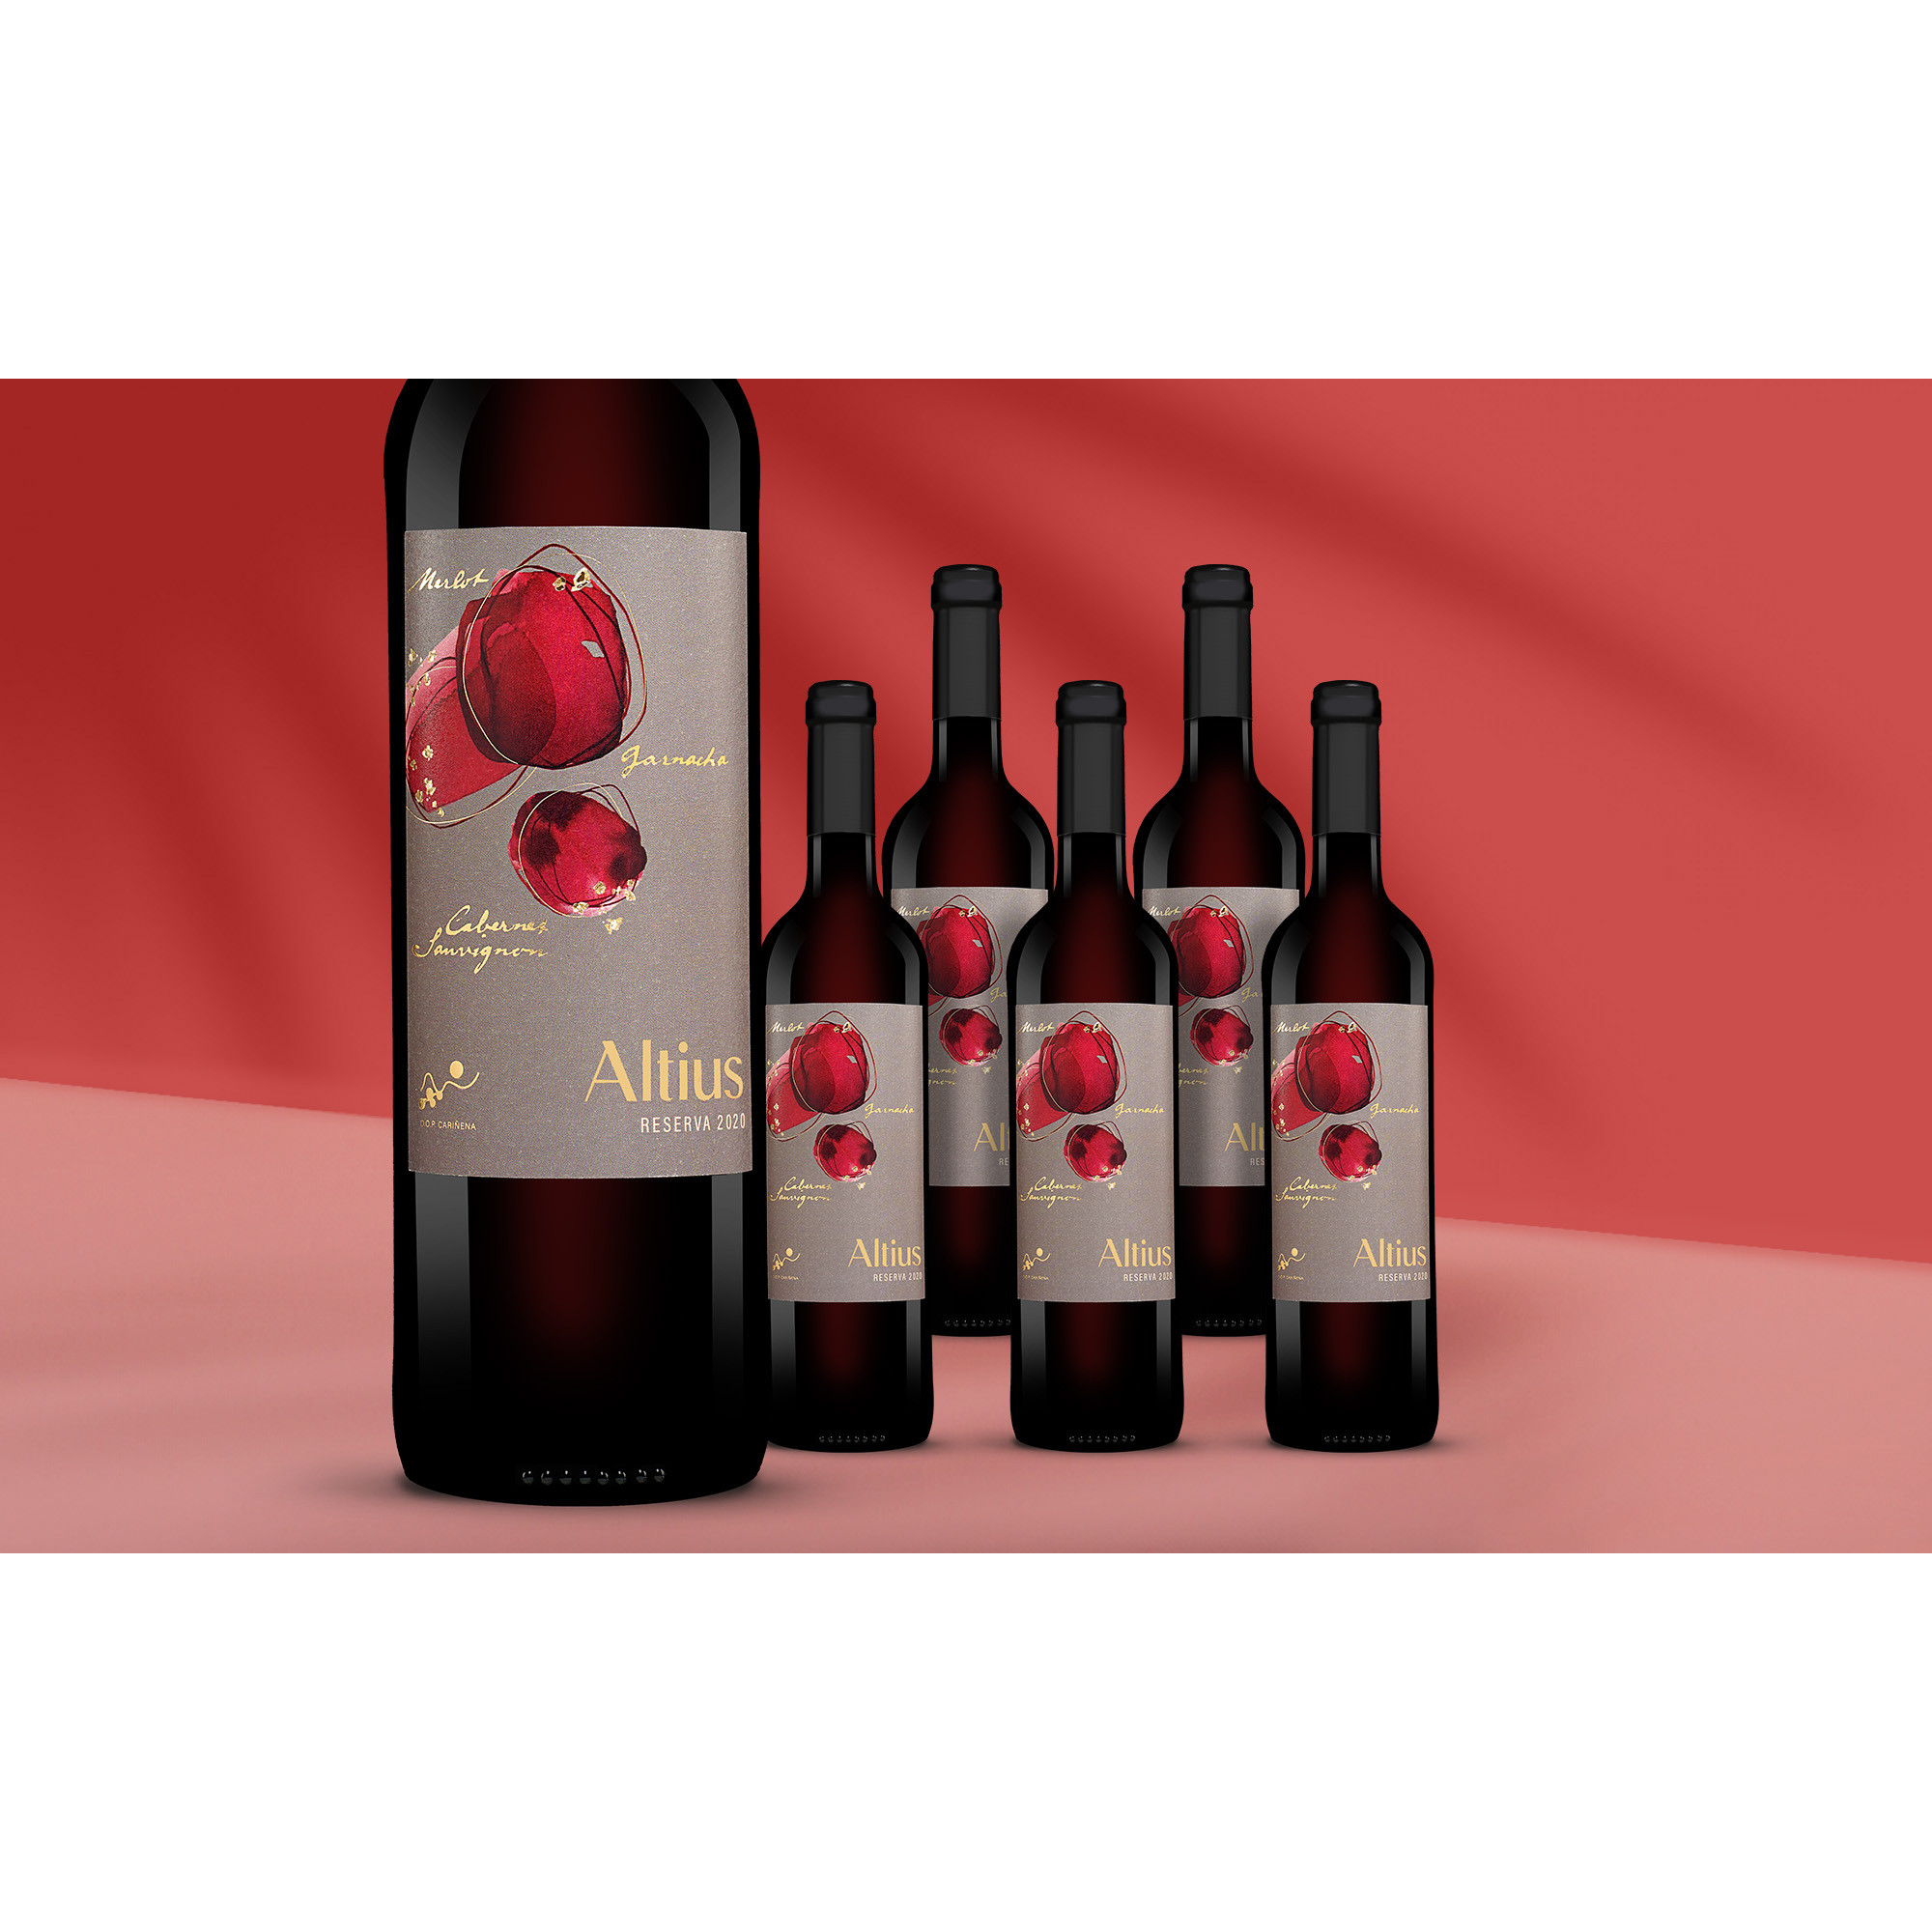 Altius Reserva 2020  414% Vol. Weinpaket aus Spanien